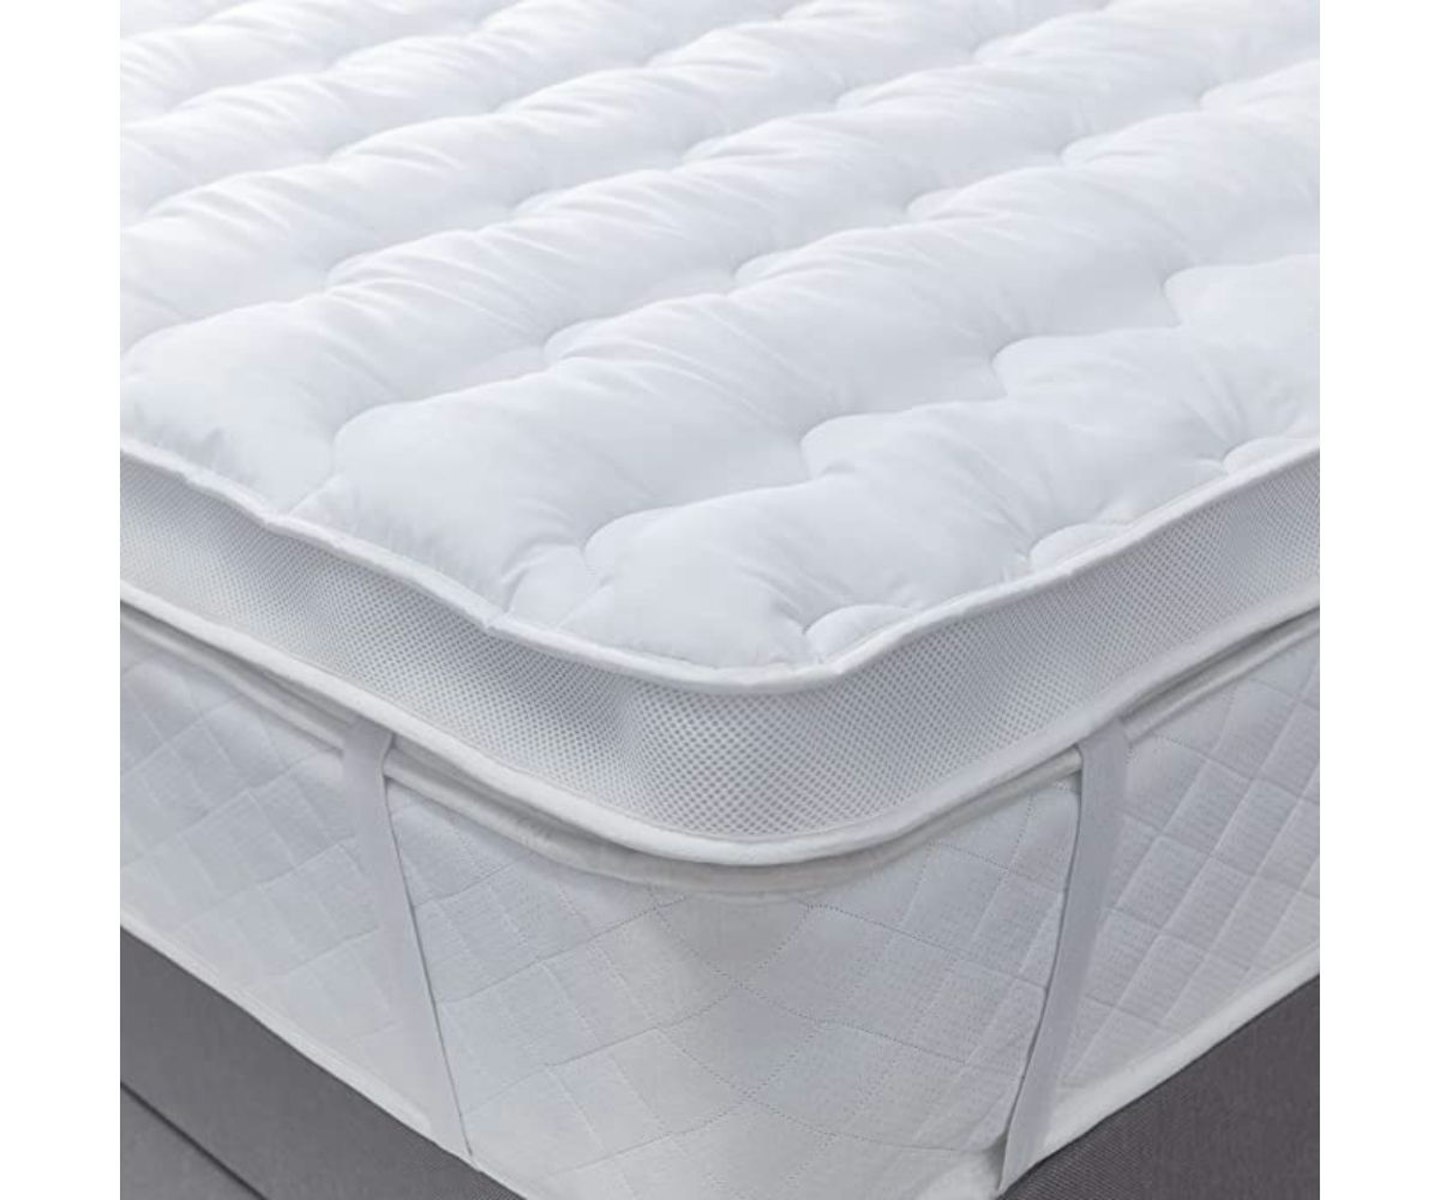 silentnight airmax 600 mattress topper reviews